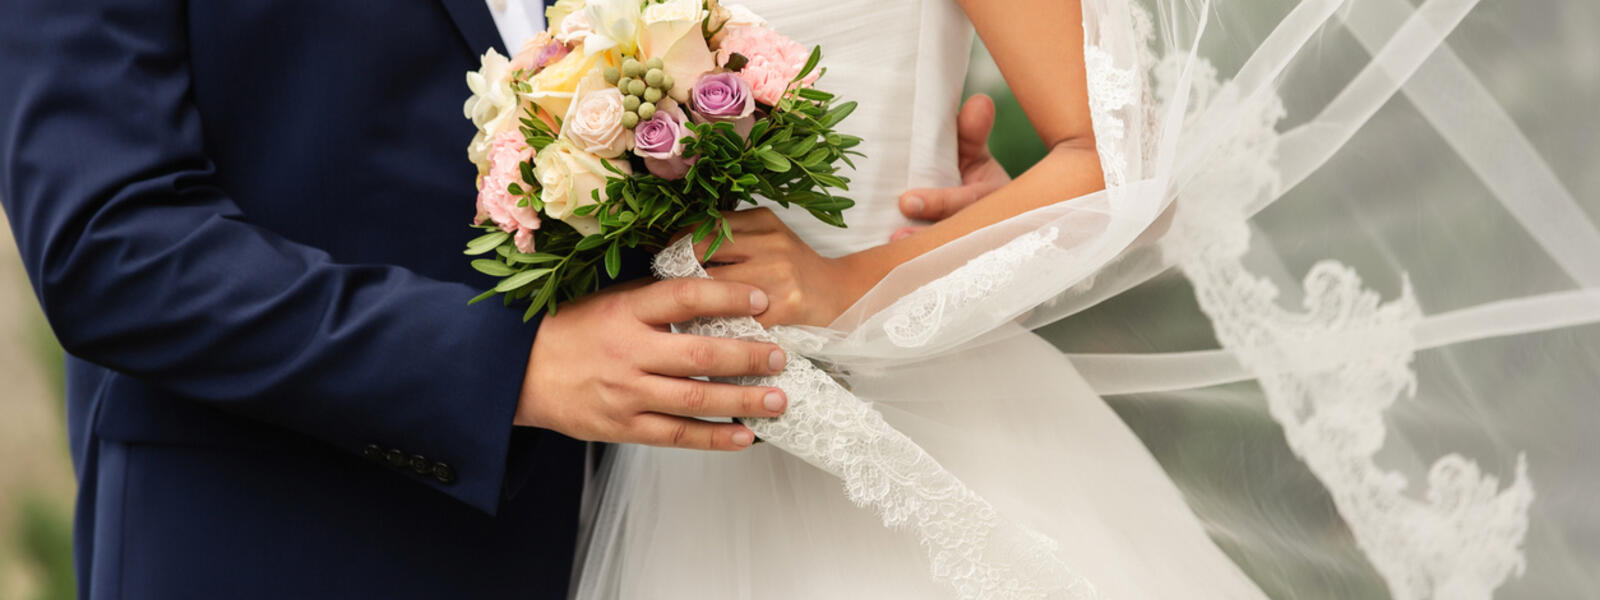 Brudpar som gifter sig och bruden håller i en blombukett